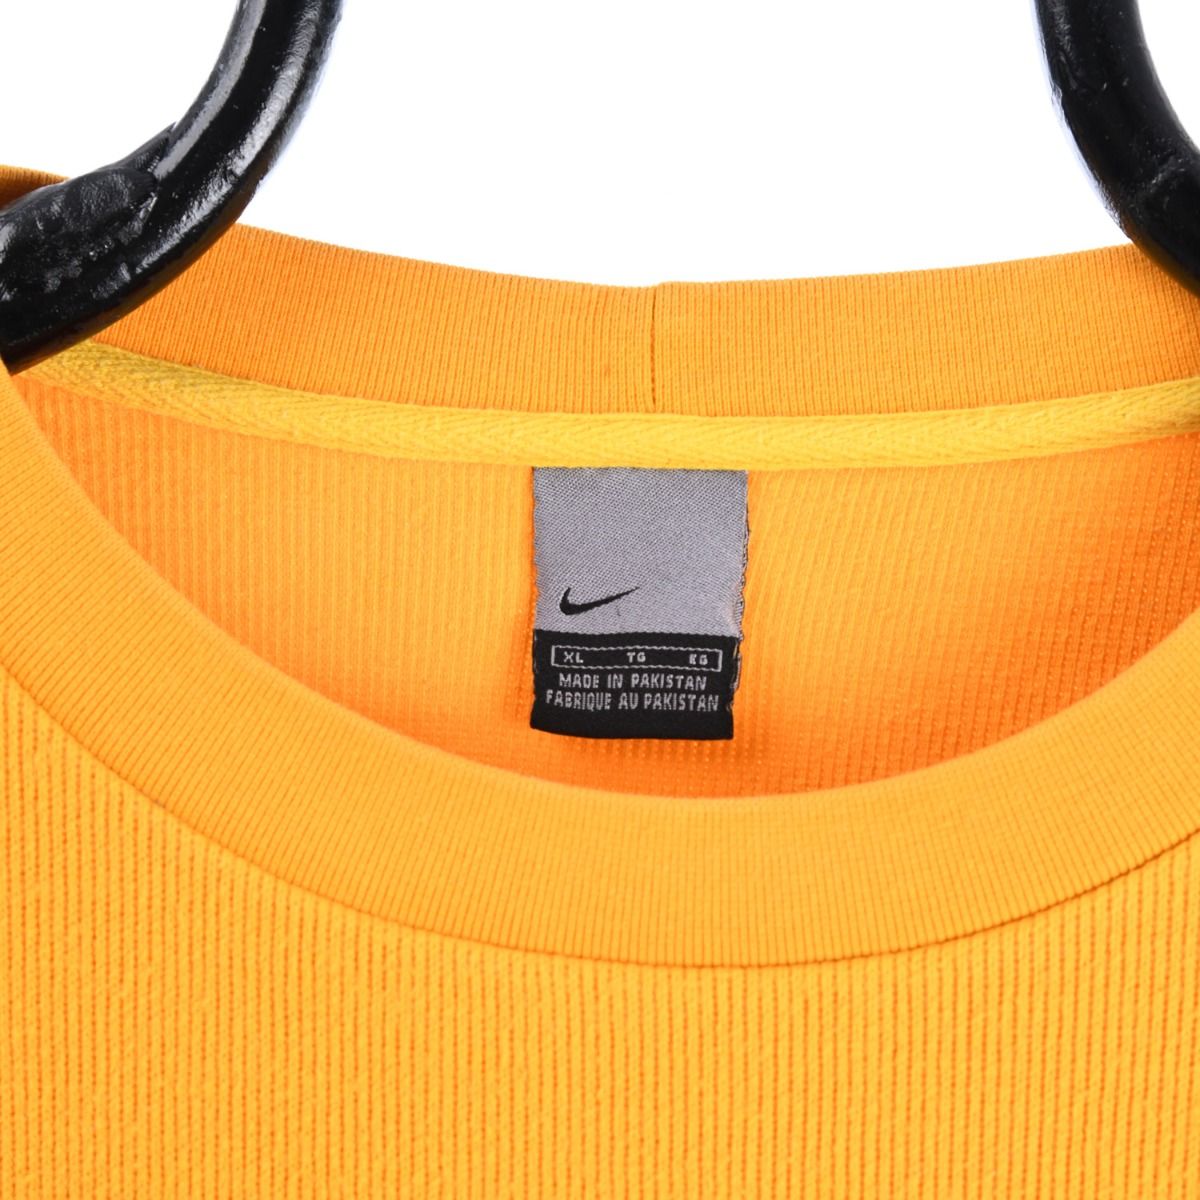 Nike Early 2000s Ribbed Sweatshirt